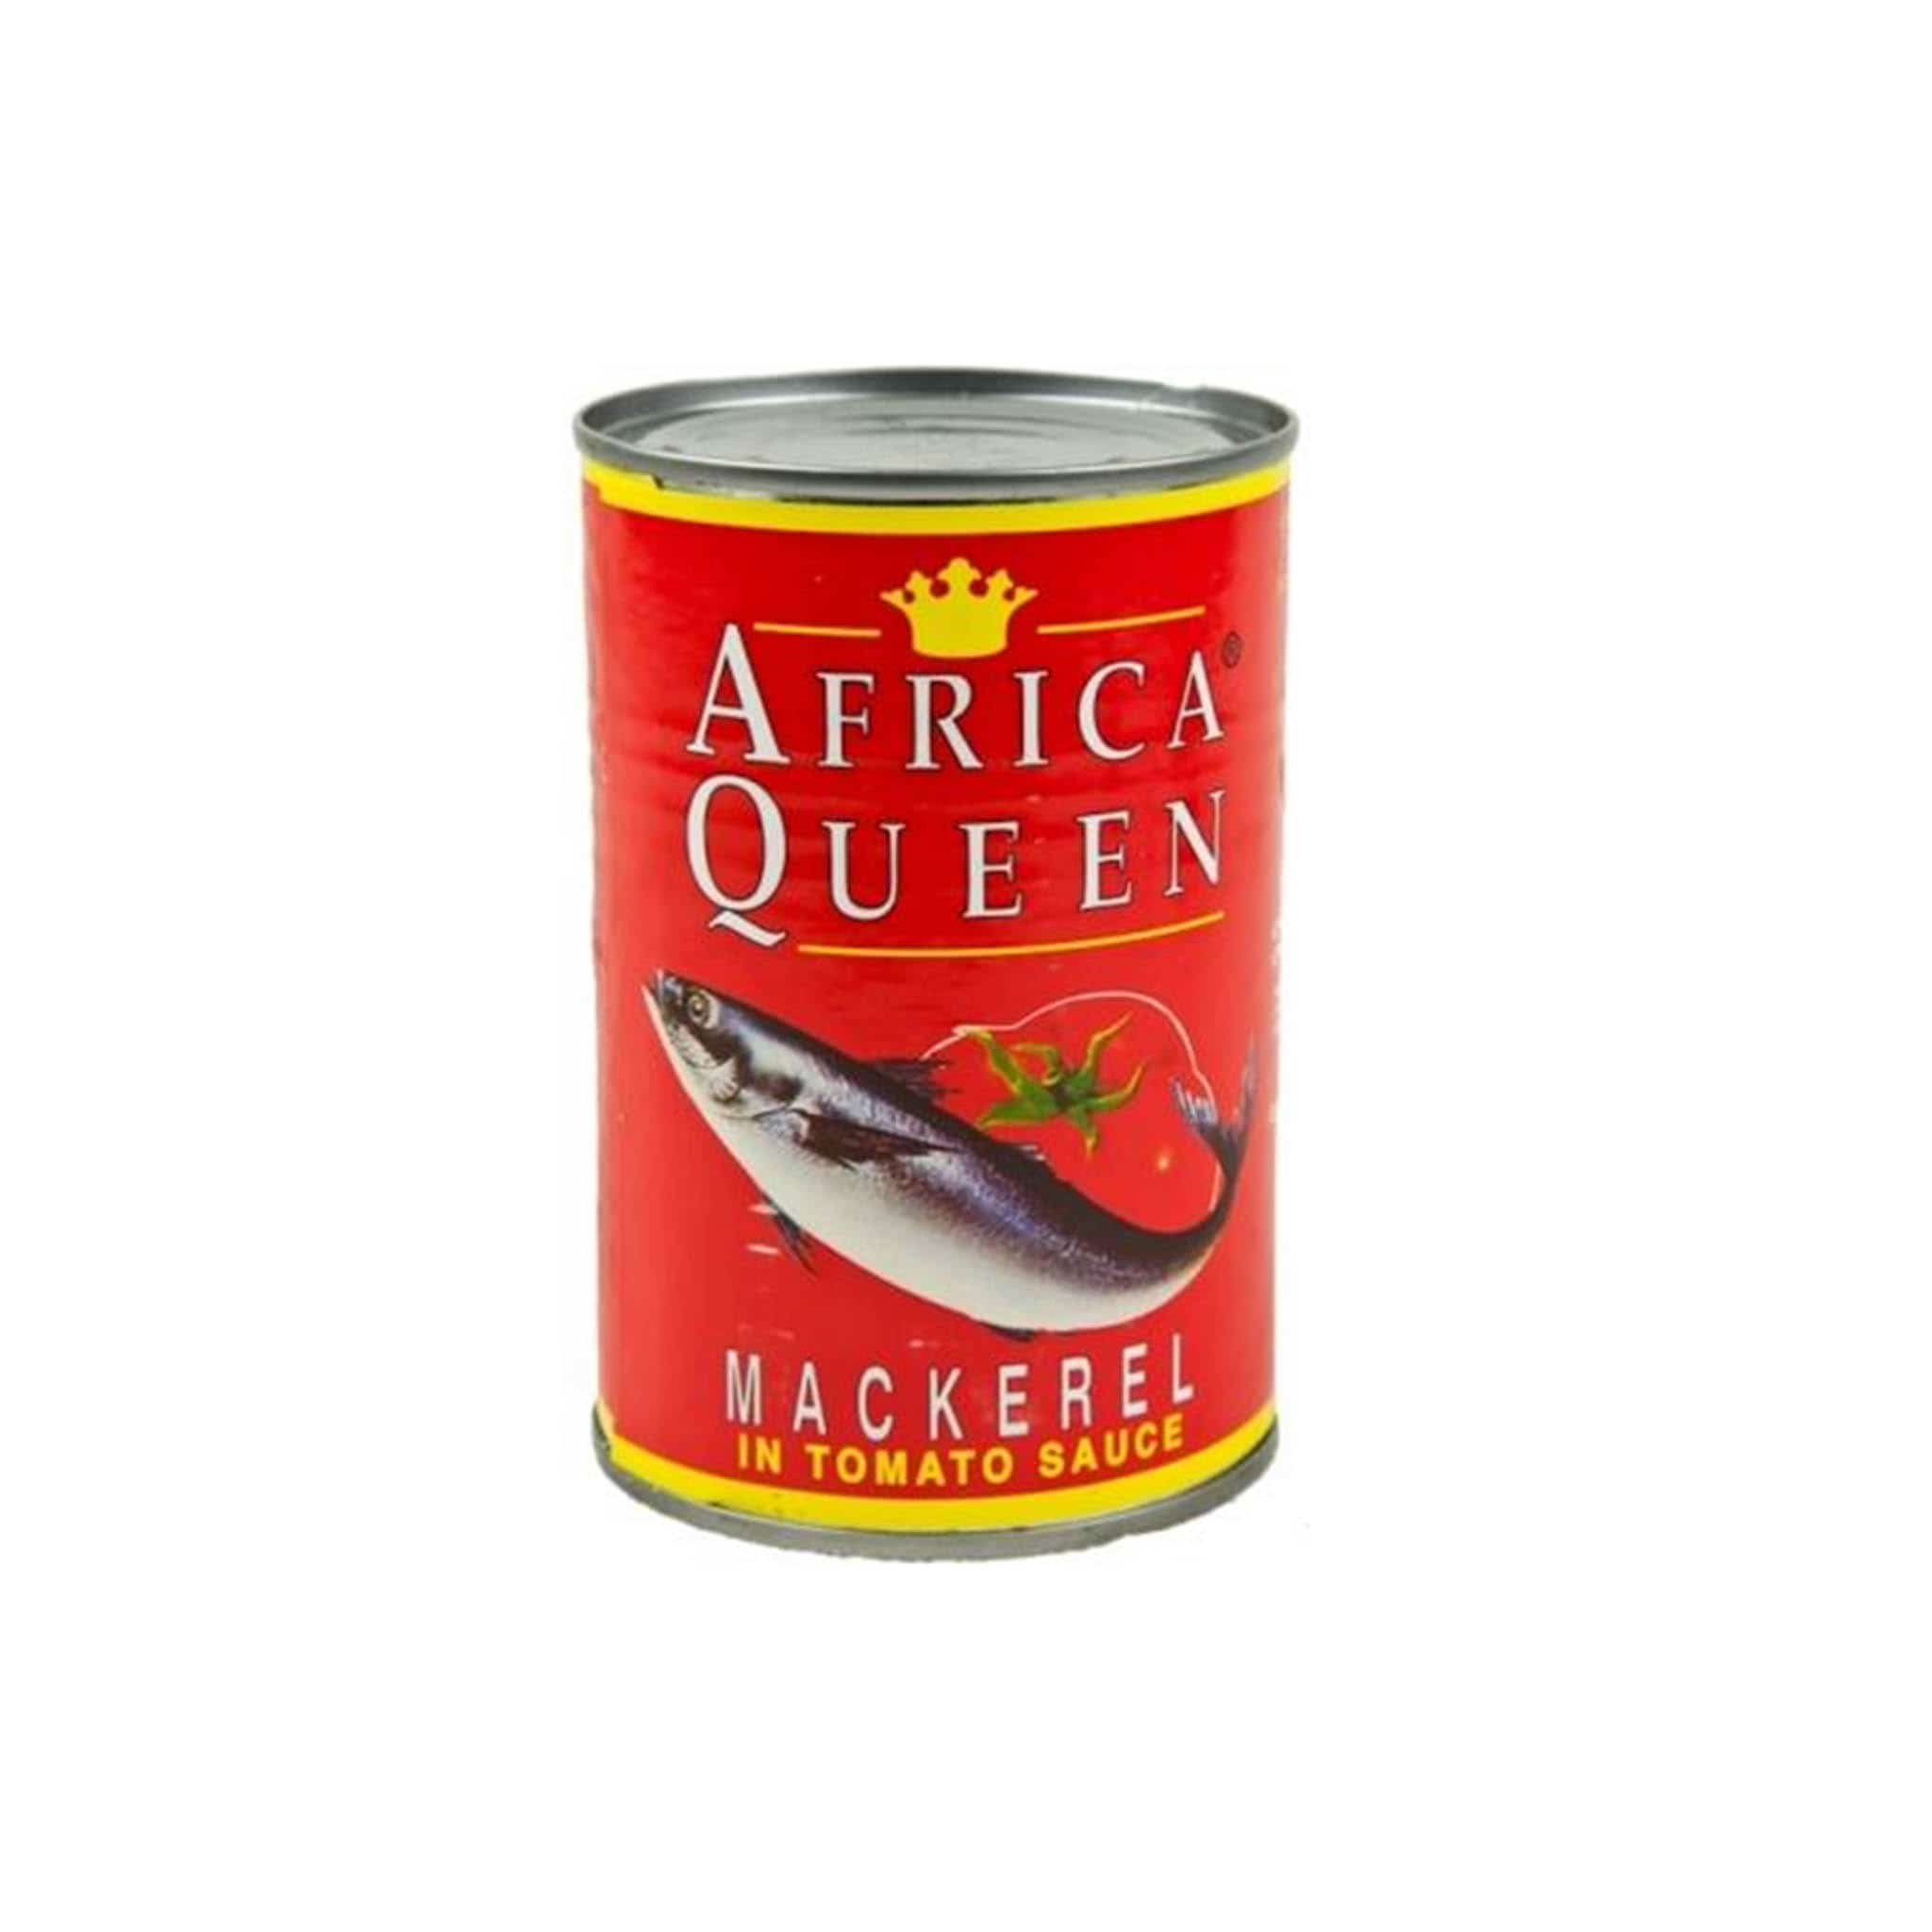 Africa Queen Mackerel in Tomato Sauce, 425g